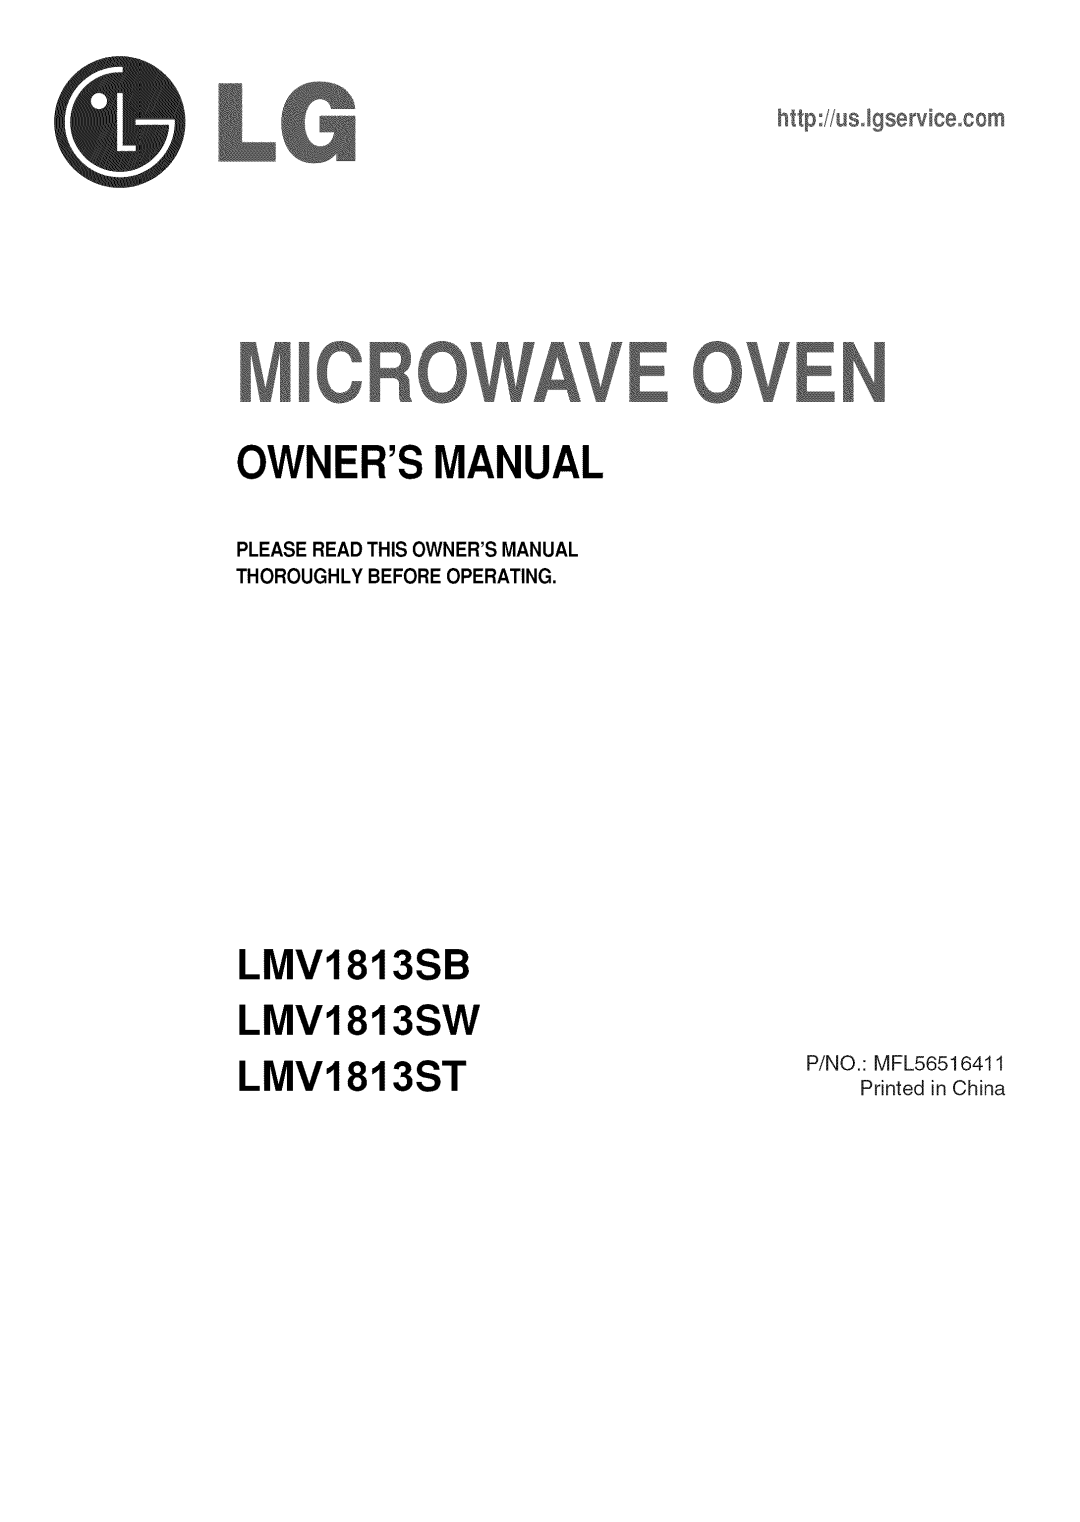 LG Electronics owner manual LMV1813SB LMV1813SW LMV1813ST, Microwave Oven, http//us.lgservice.com 